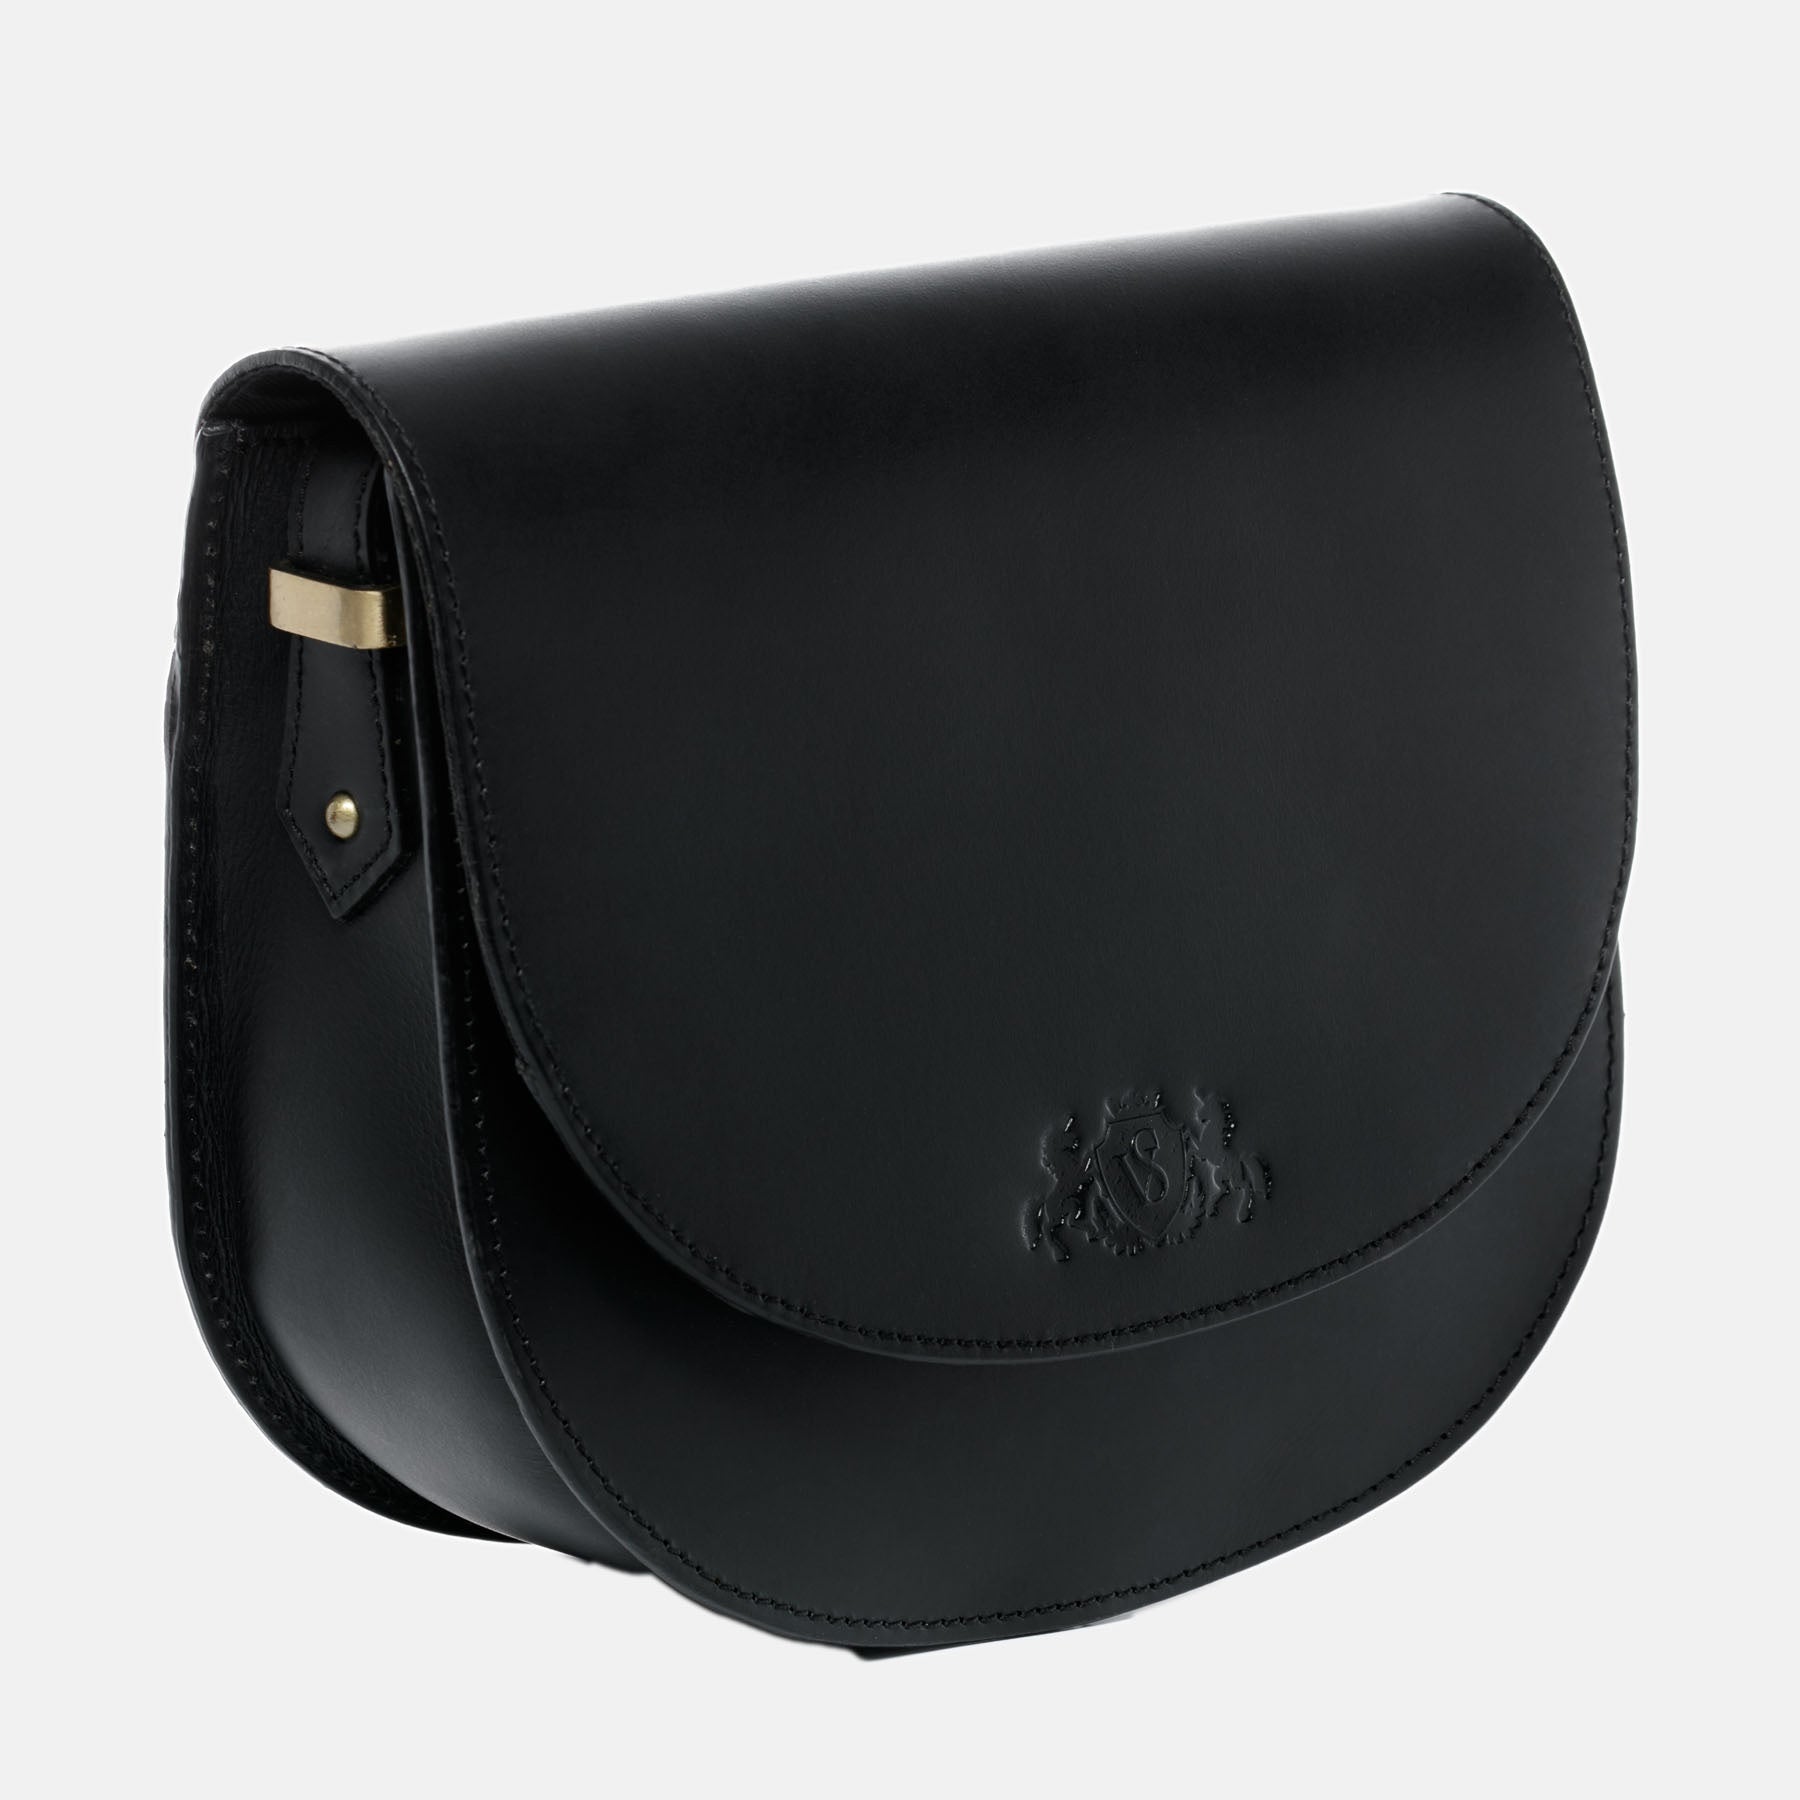 Shoulder bag TRISH saddle leather black